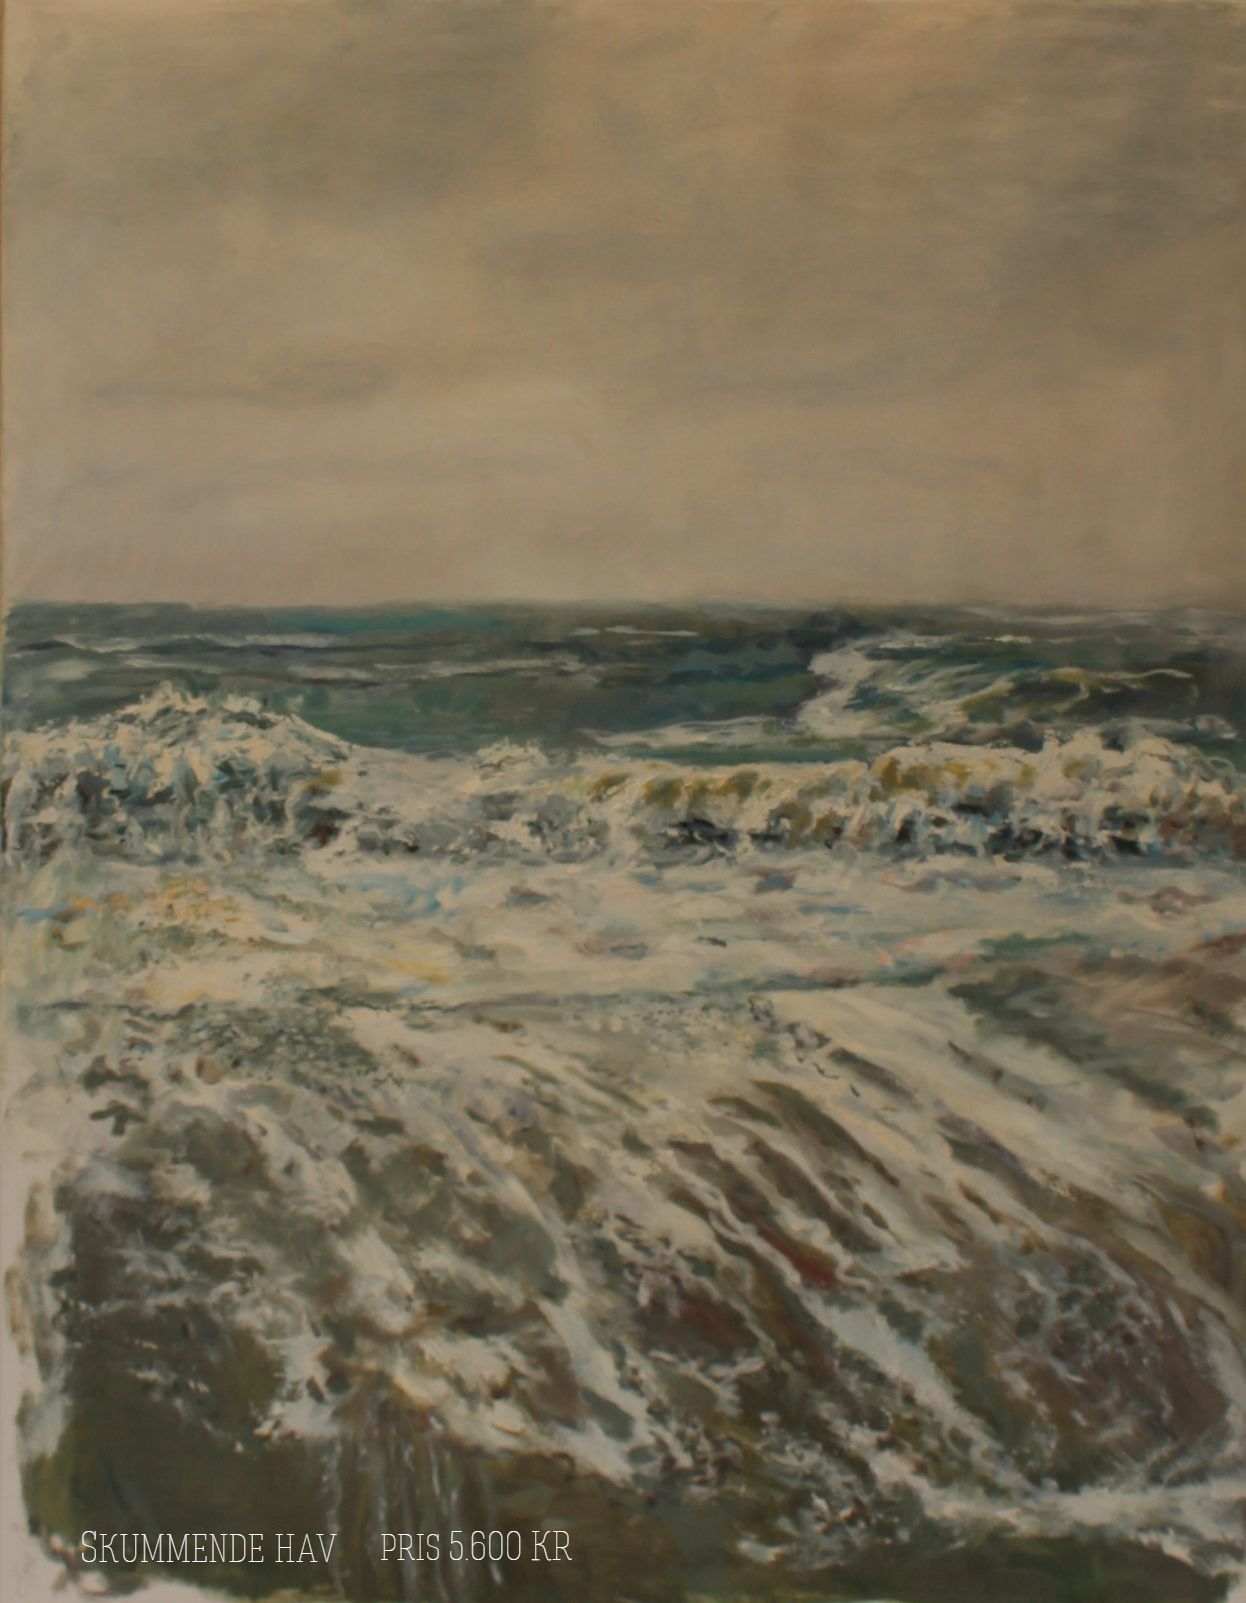 Oliemaleri 80 x 60 af skummende bølger ved strand malet af  Tove Lois Andreasen